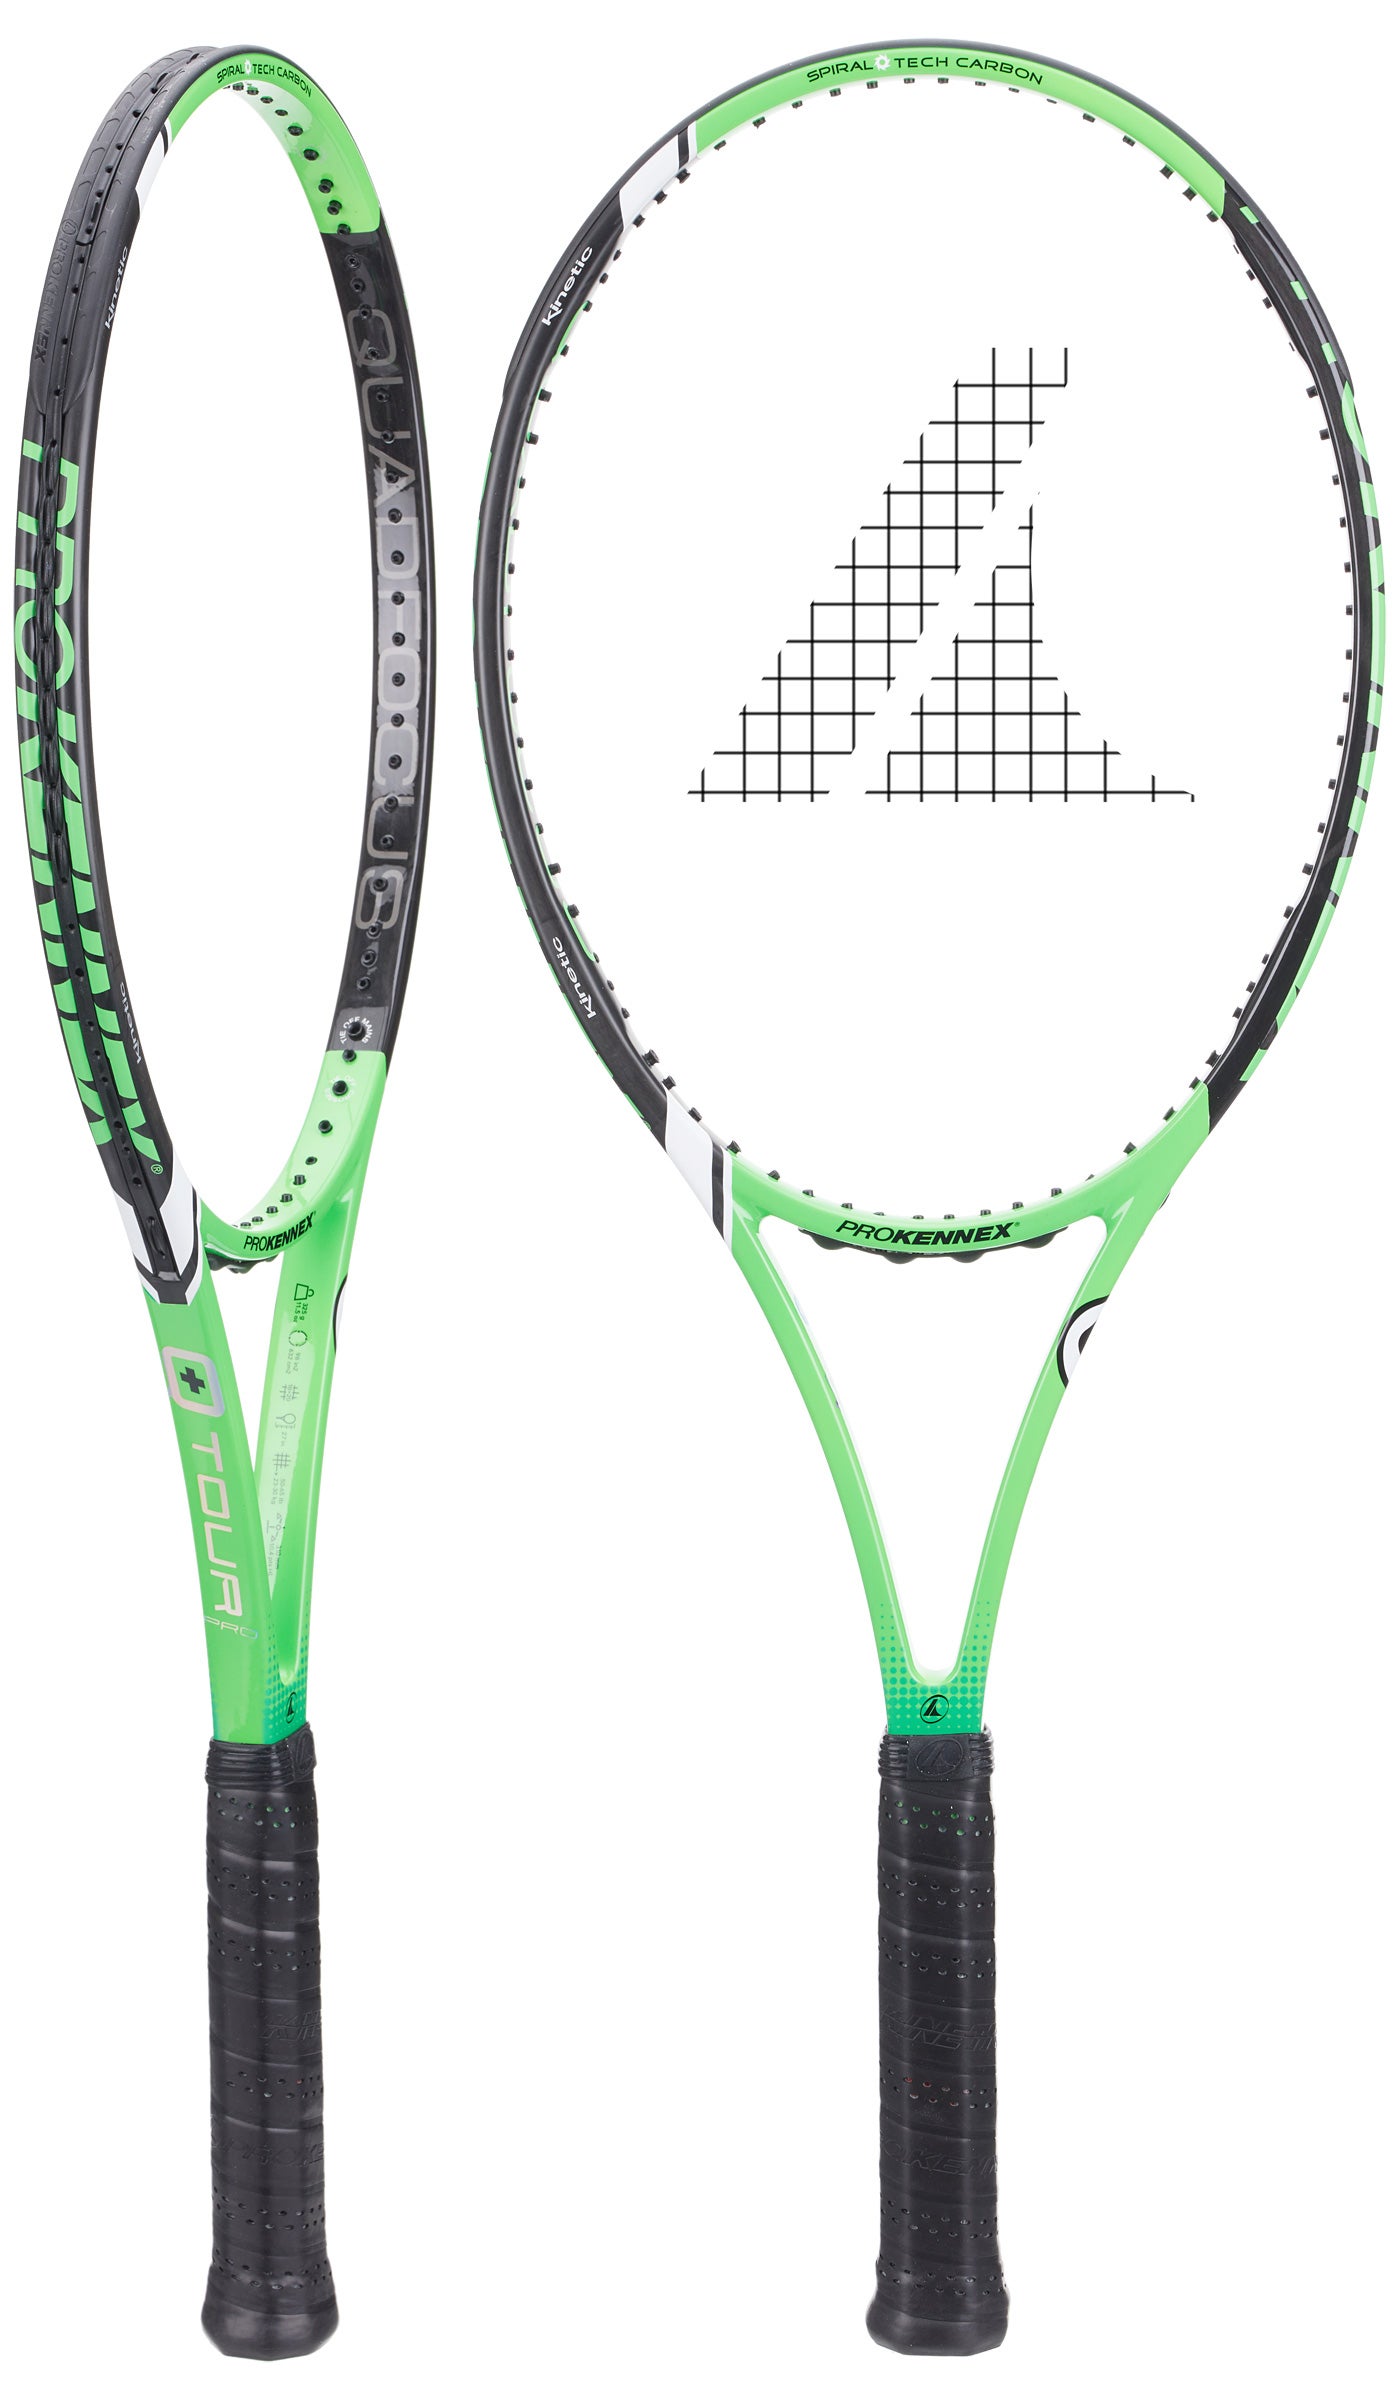  18 X 20Grip 4 1/4New Tennis Racquet Pro Kennex Q Tour 325 